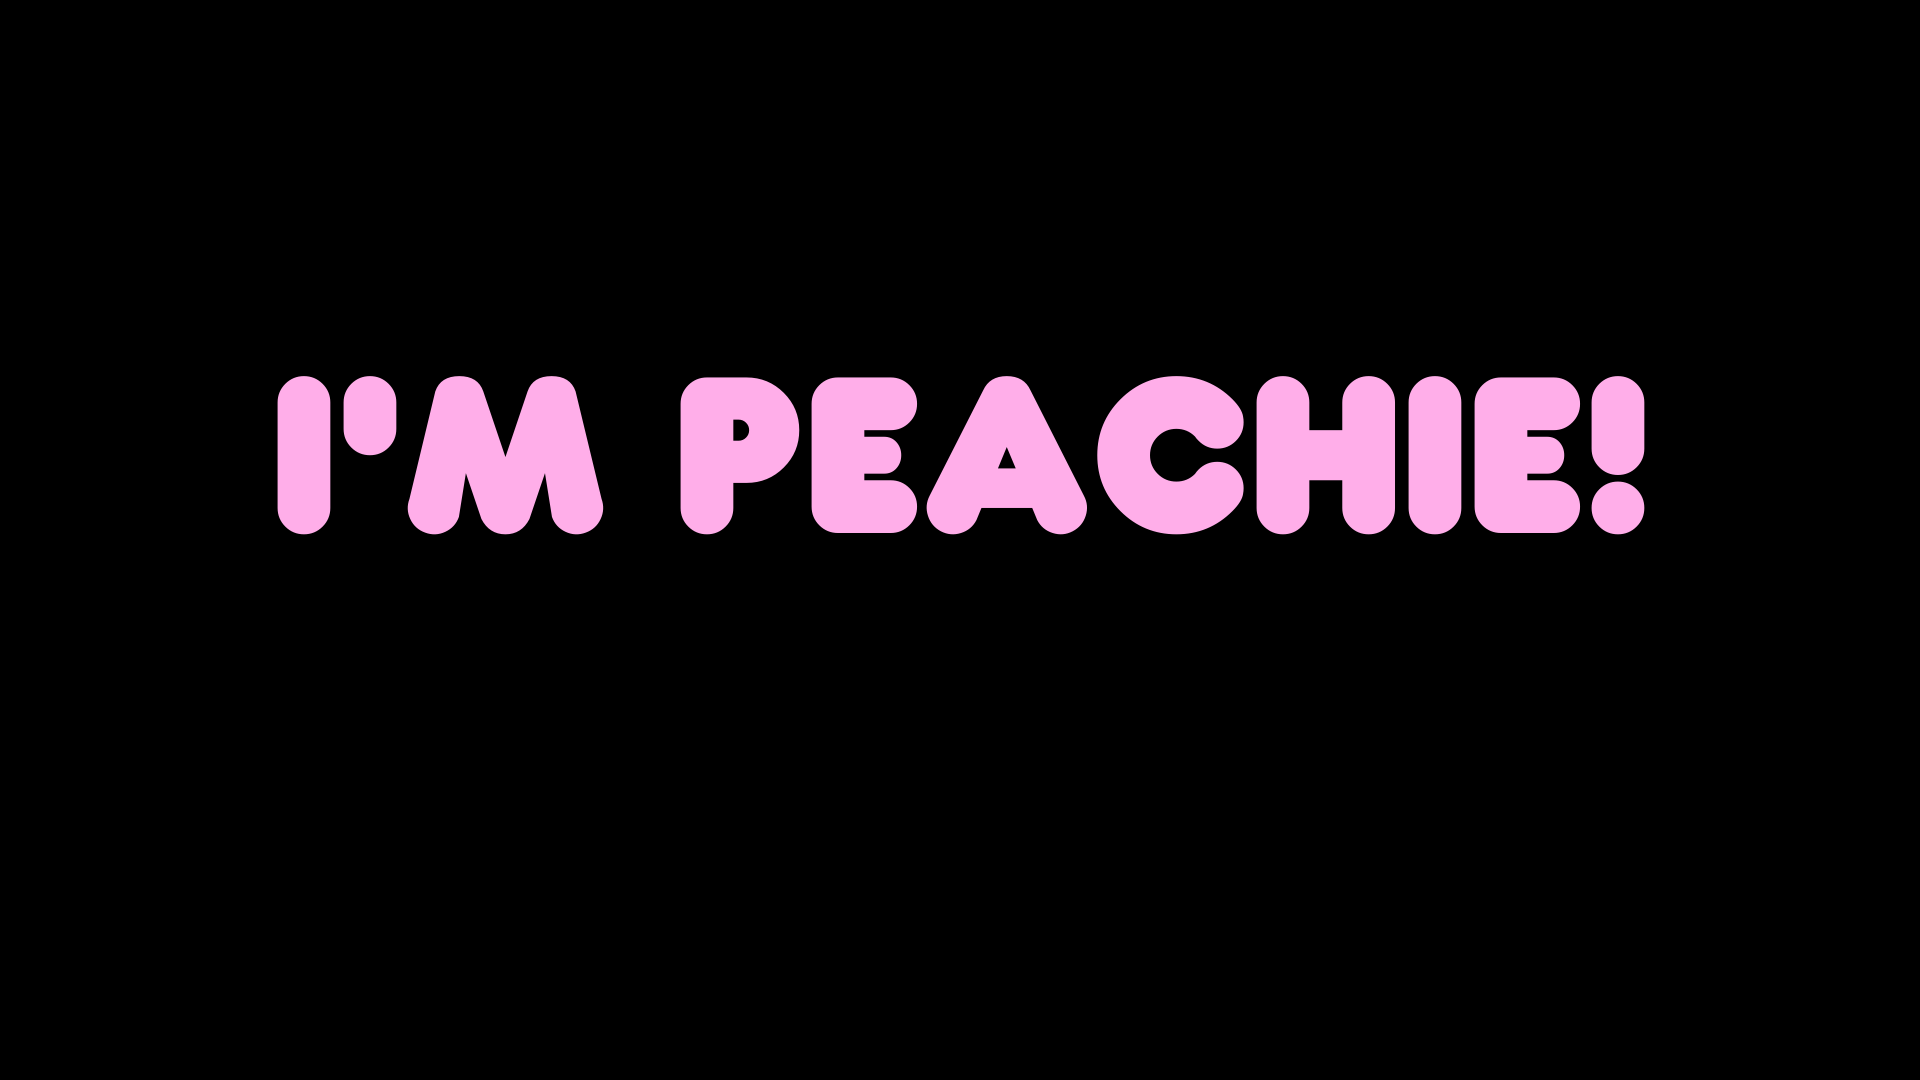 I'm Peachie!